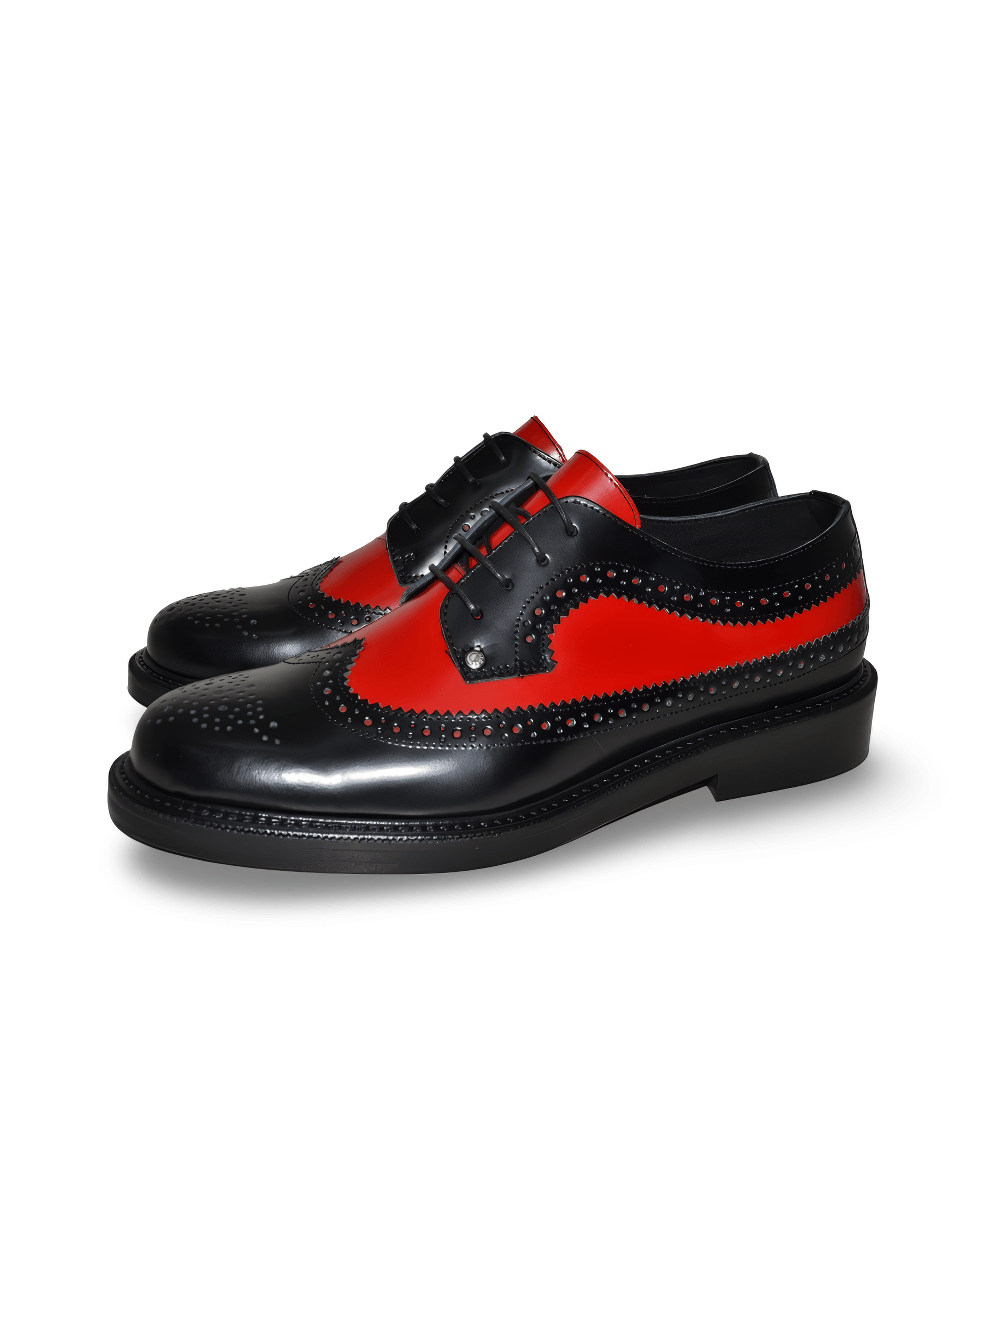 Zapatos Derby con cordones estilo Rockabilly en negro y rojo para hombre